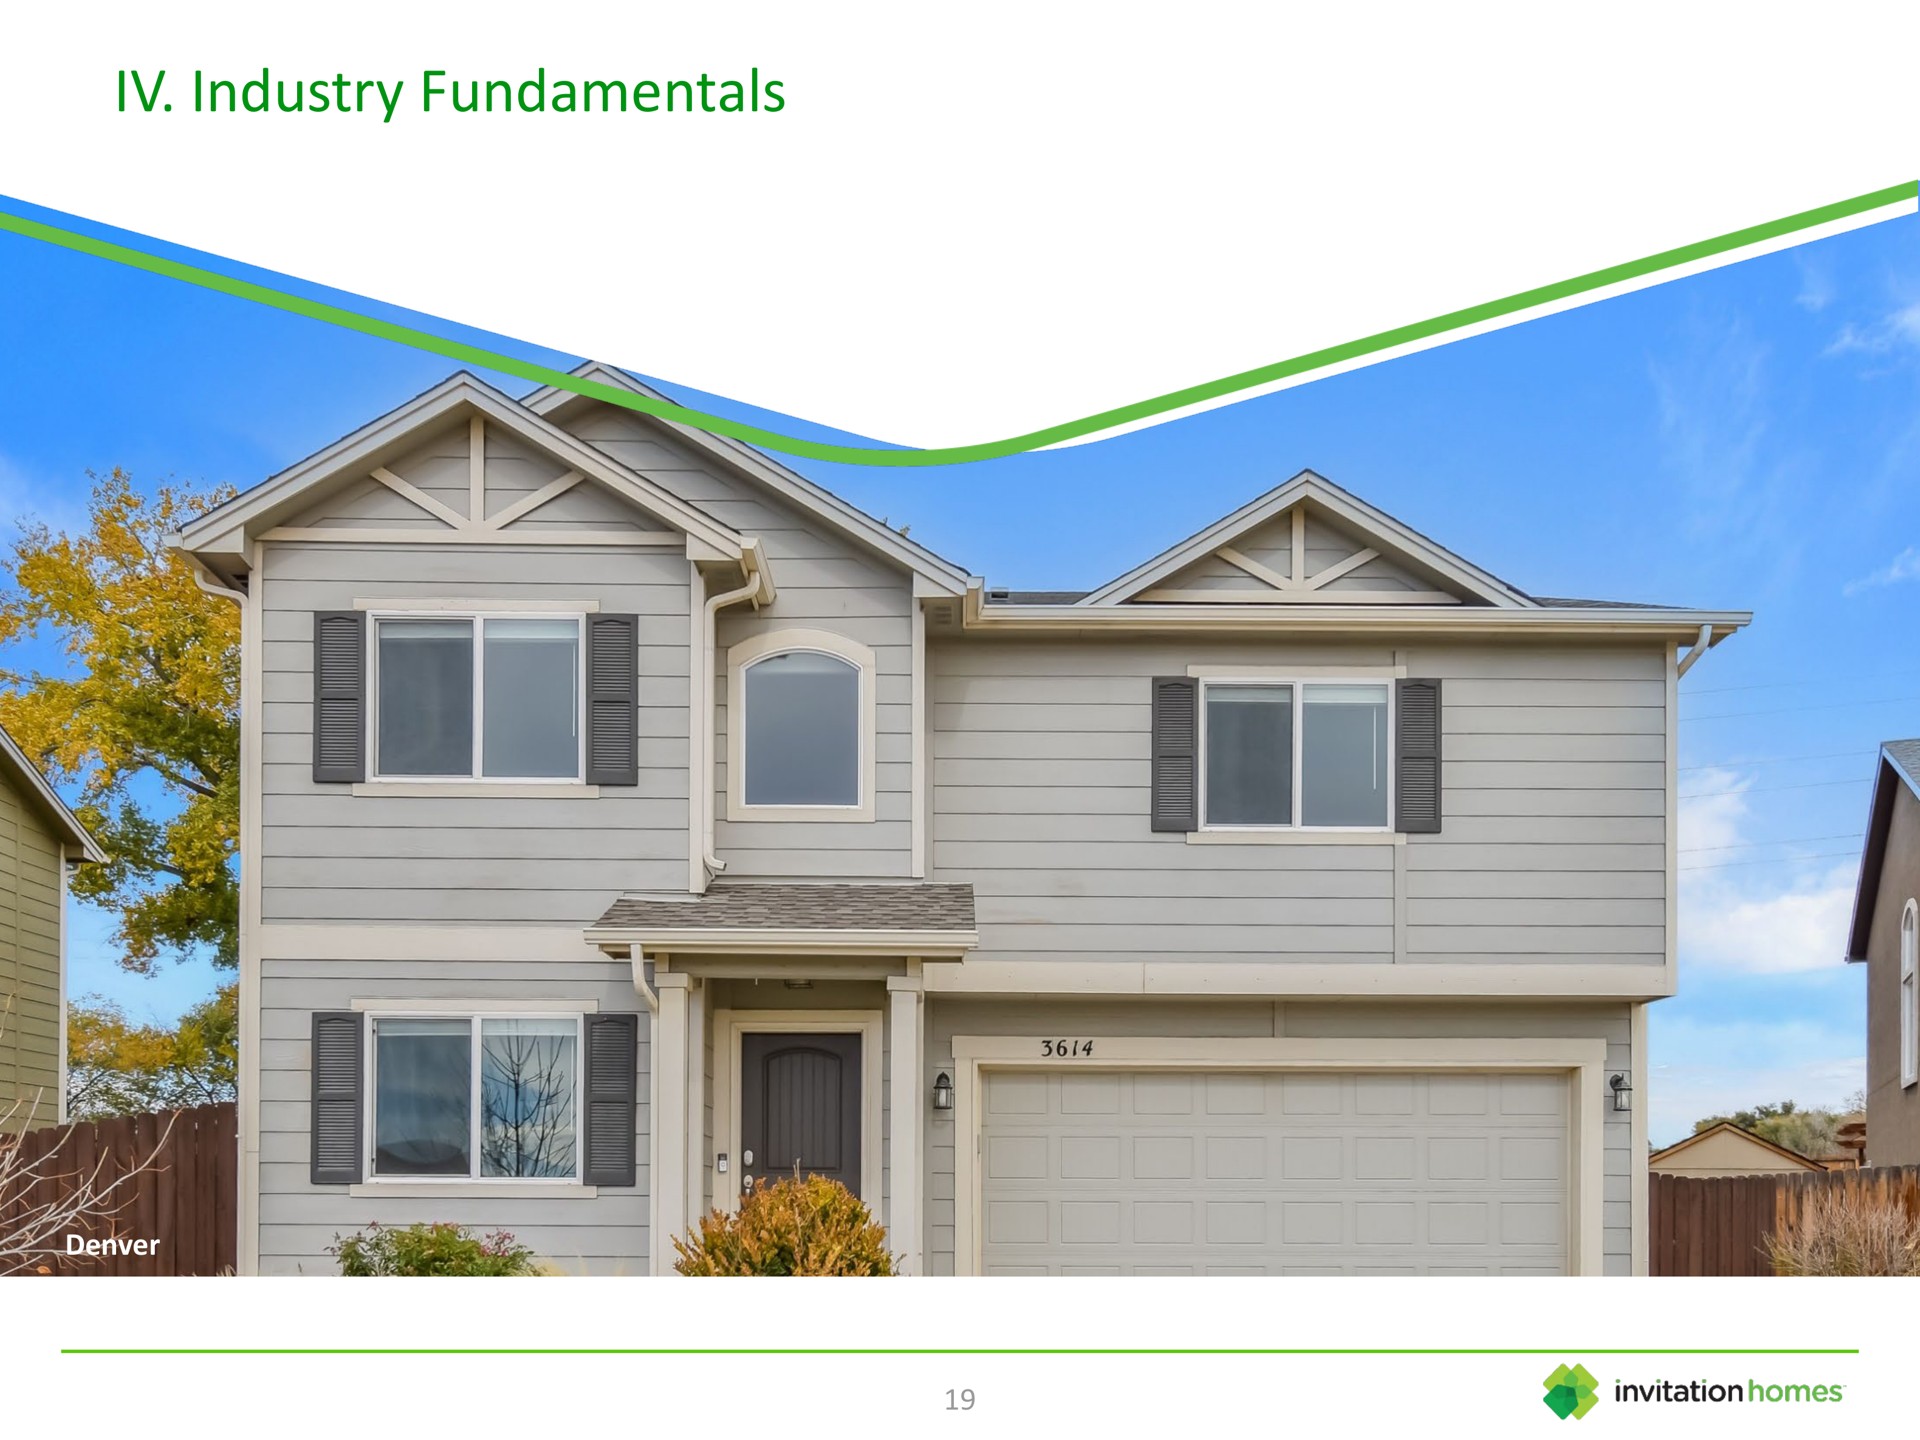 industry fundamentals | Invitation Homes